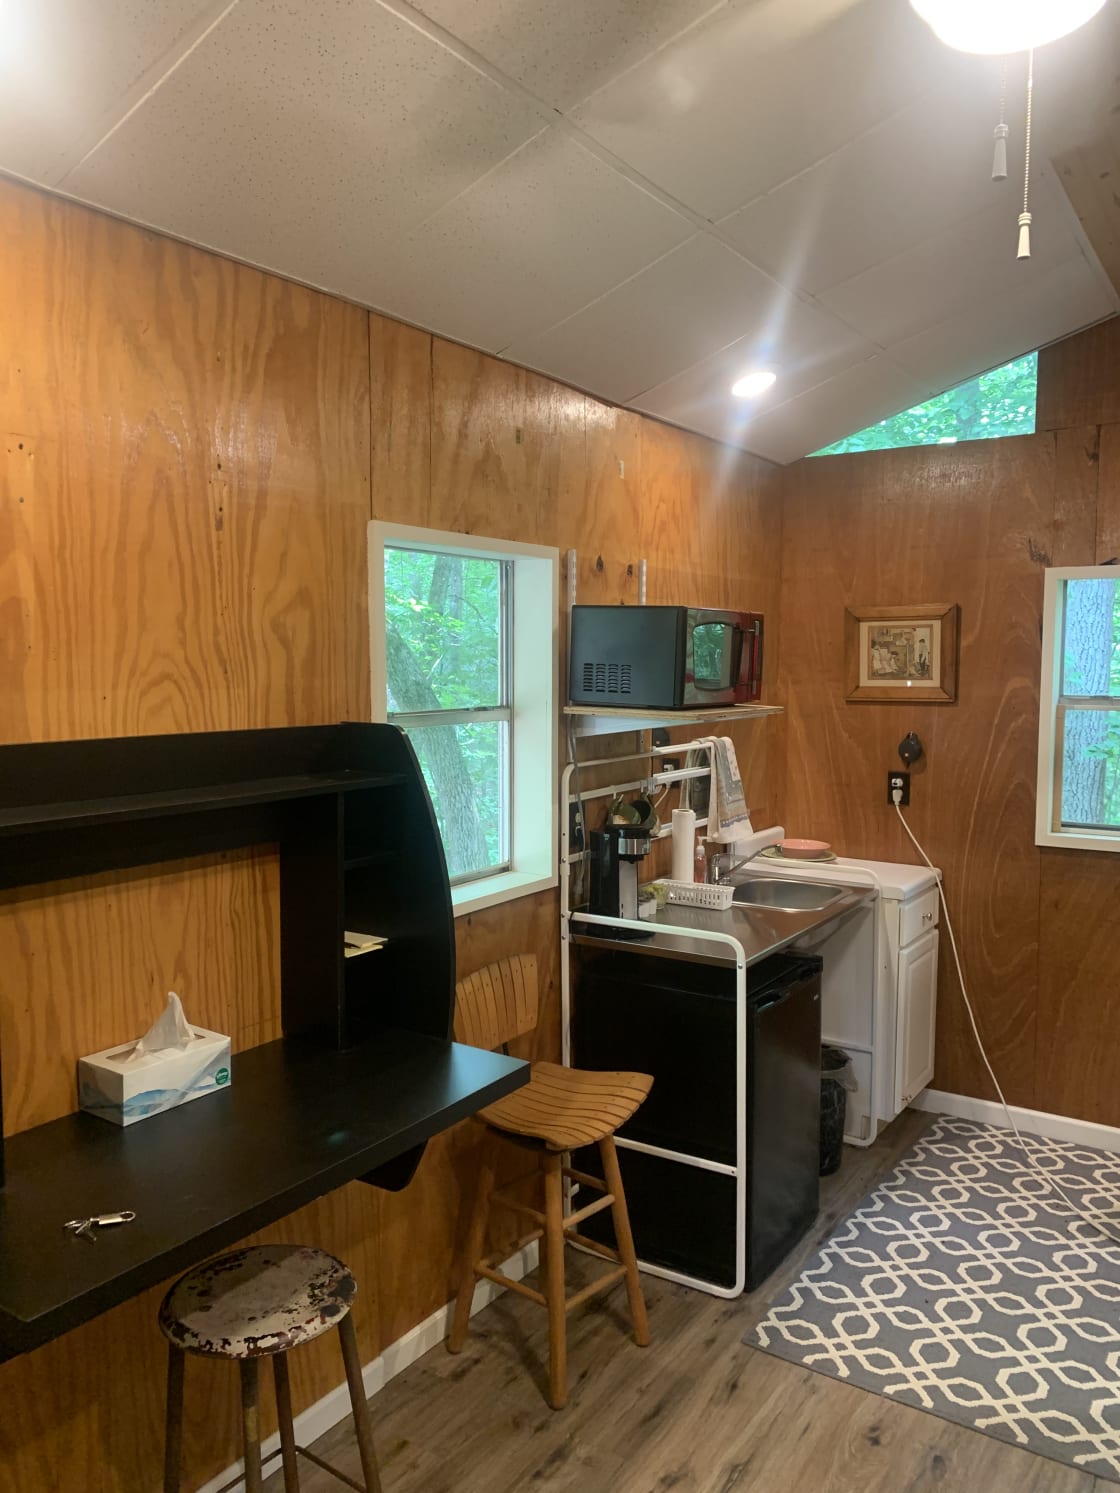 Camp Joe Tiny cabin